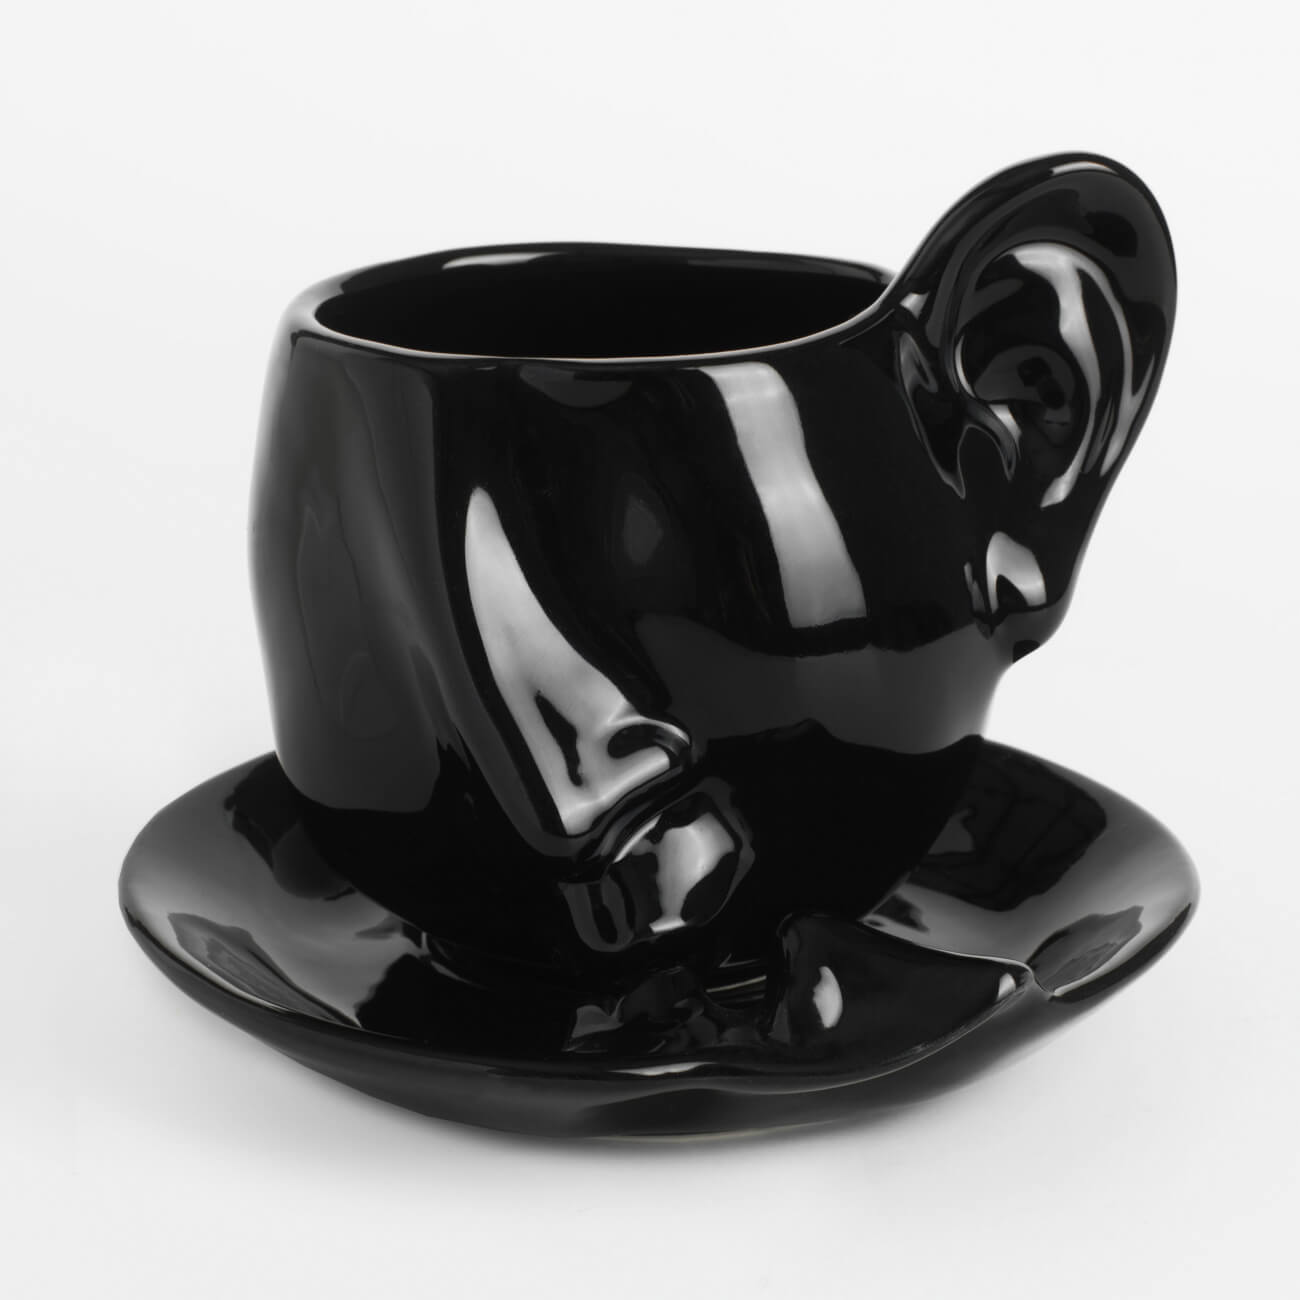 Пара чайная, 1 перс, 2 пр, 320 мл, керамика, черная, Поцелуй, Baise ложка именная чайная с гравировкой